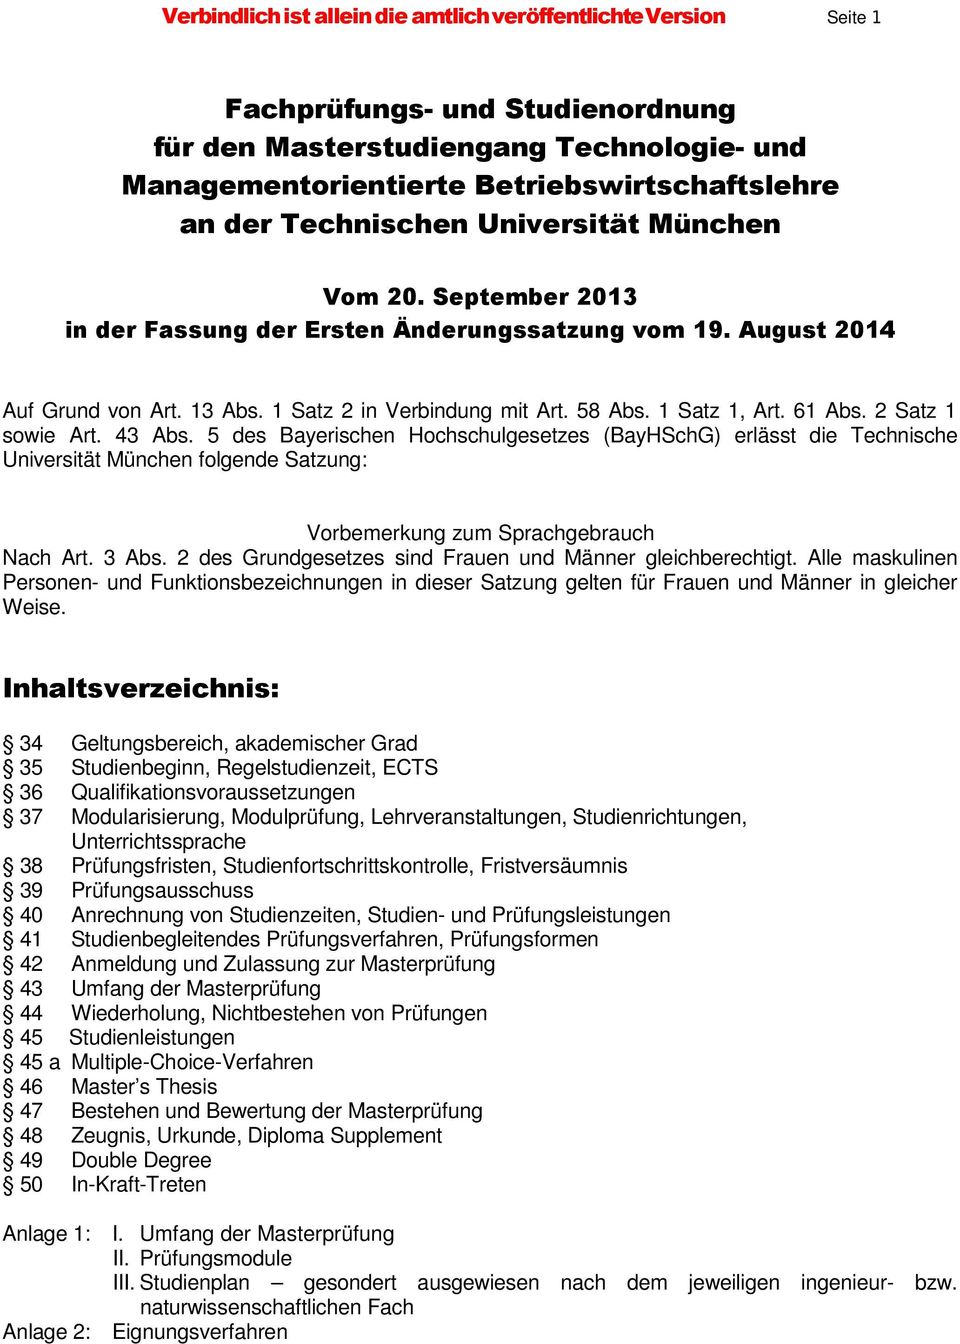 61 Abs. 2 Satz 1 sowie Art. 43 Abs. 5 des Bayerischen Hochschulgesetzes (BayHSchG) erlässt die Technische Universität München folgende Satzung: Vorbemerkung zum Sprachgebrauch Nach Art. 3 Abs.